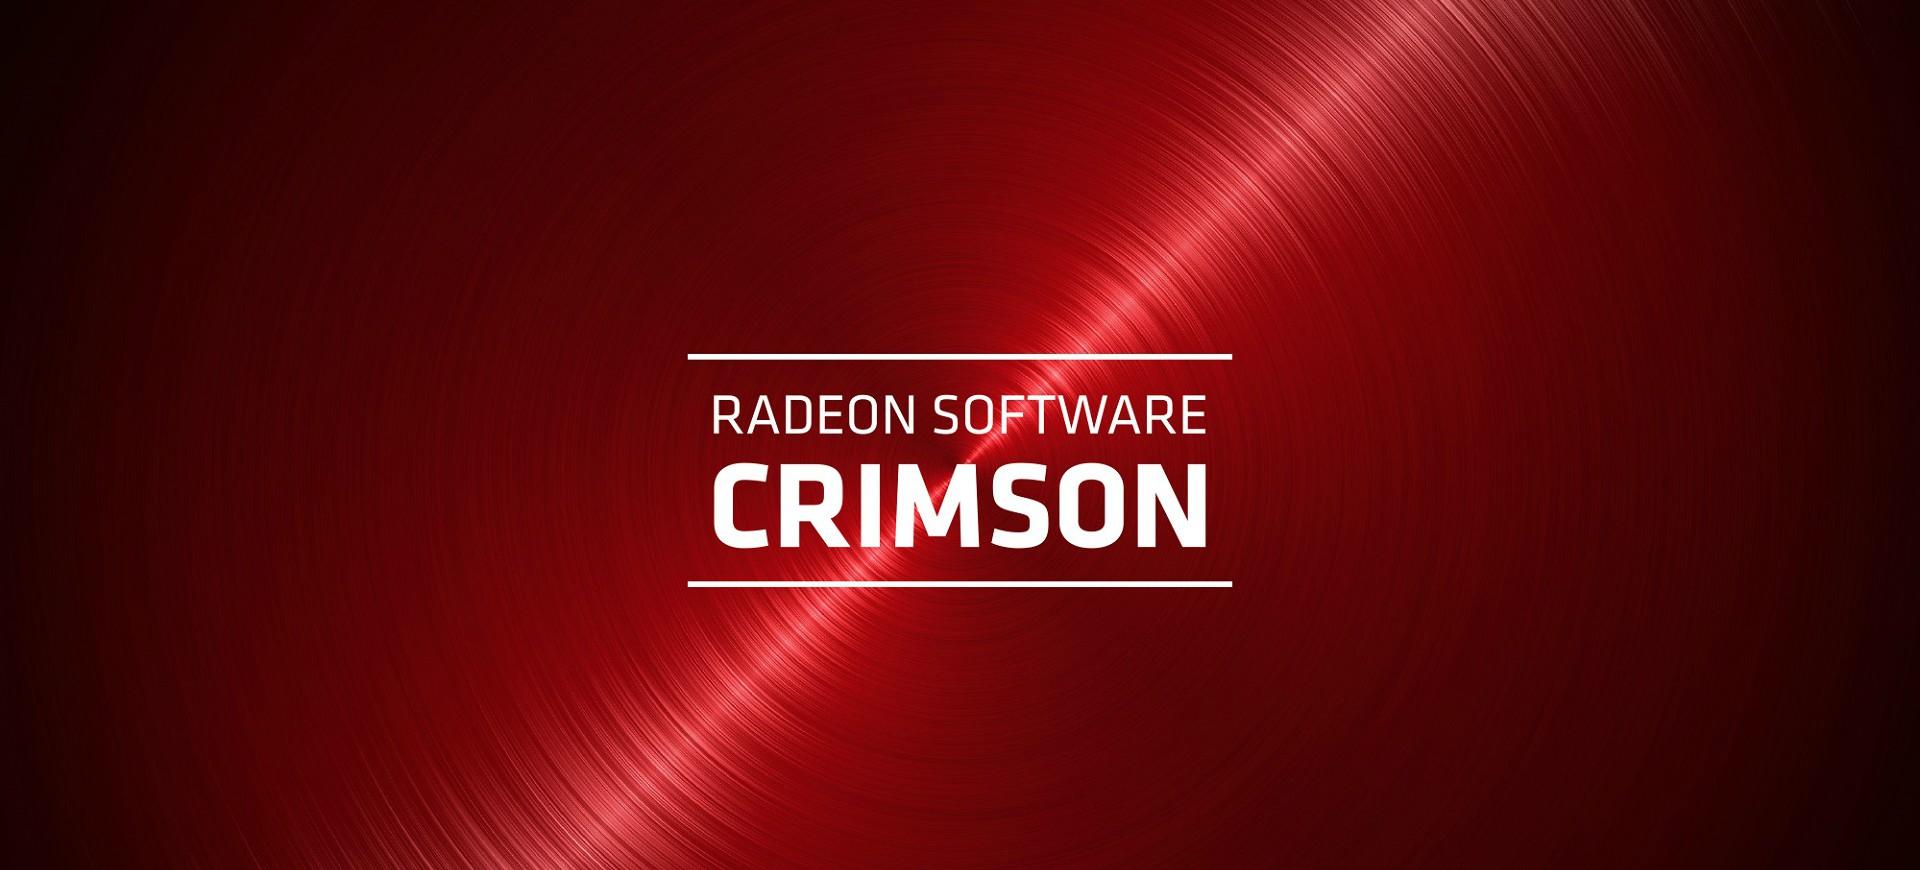 amd-crimson-radeon-software-lat-do-trieu-dai-amd-catalyst